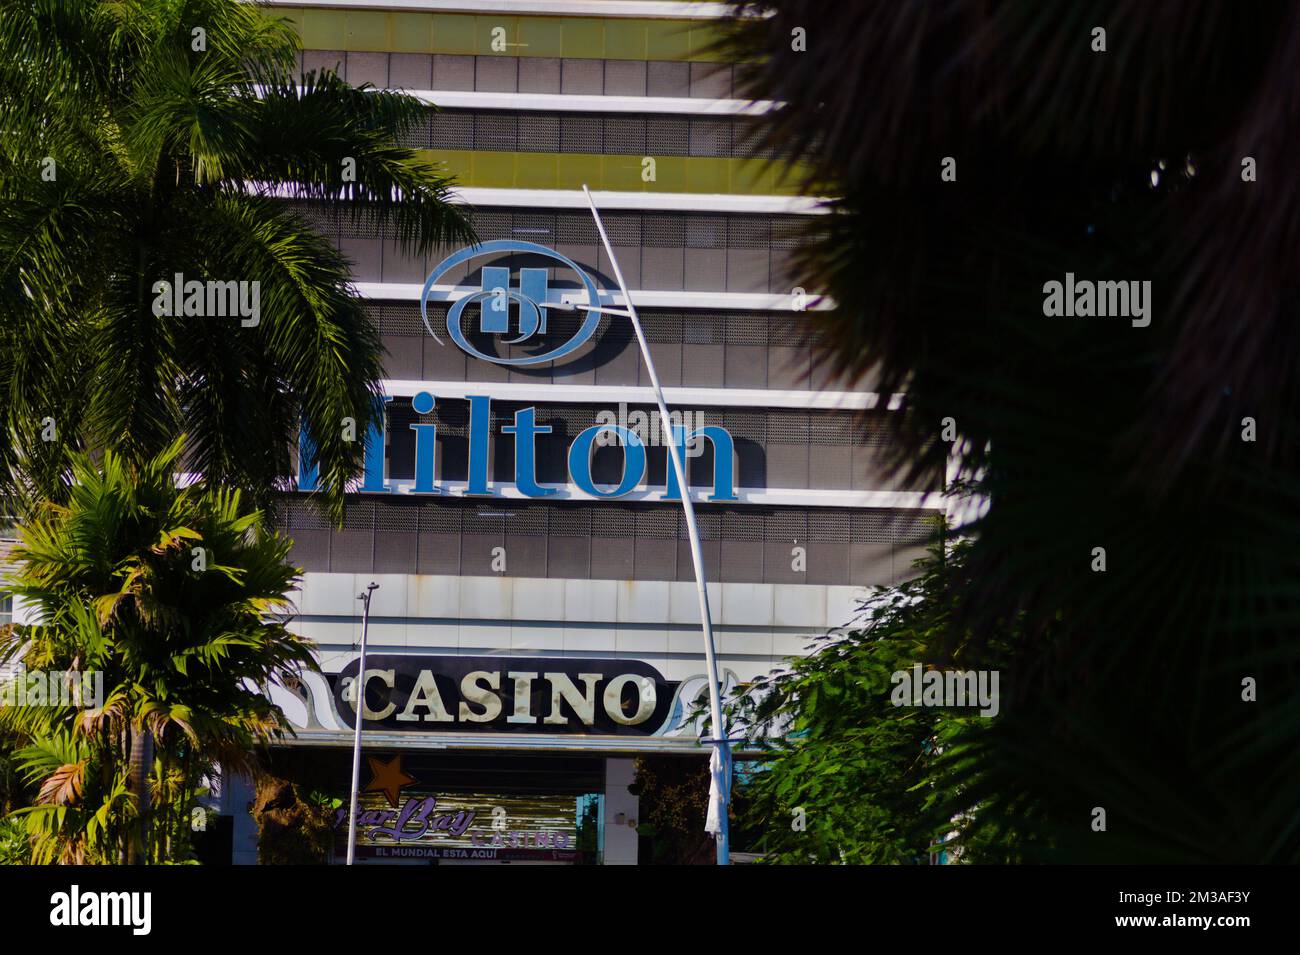 nom de l'hôtel de la chaîne hamilton dans la ville de panama Banque D'Images